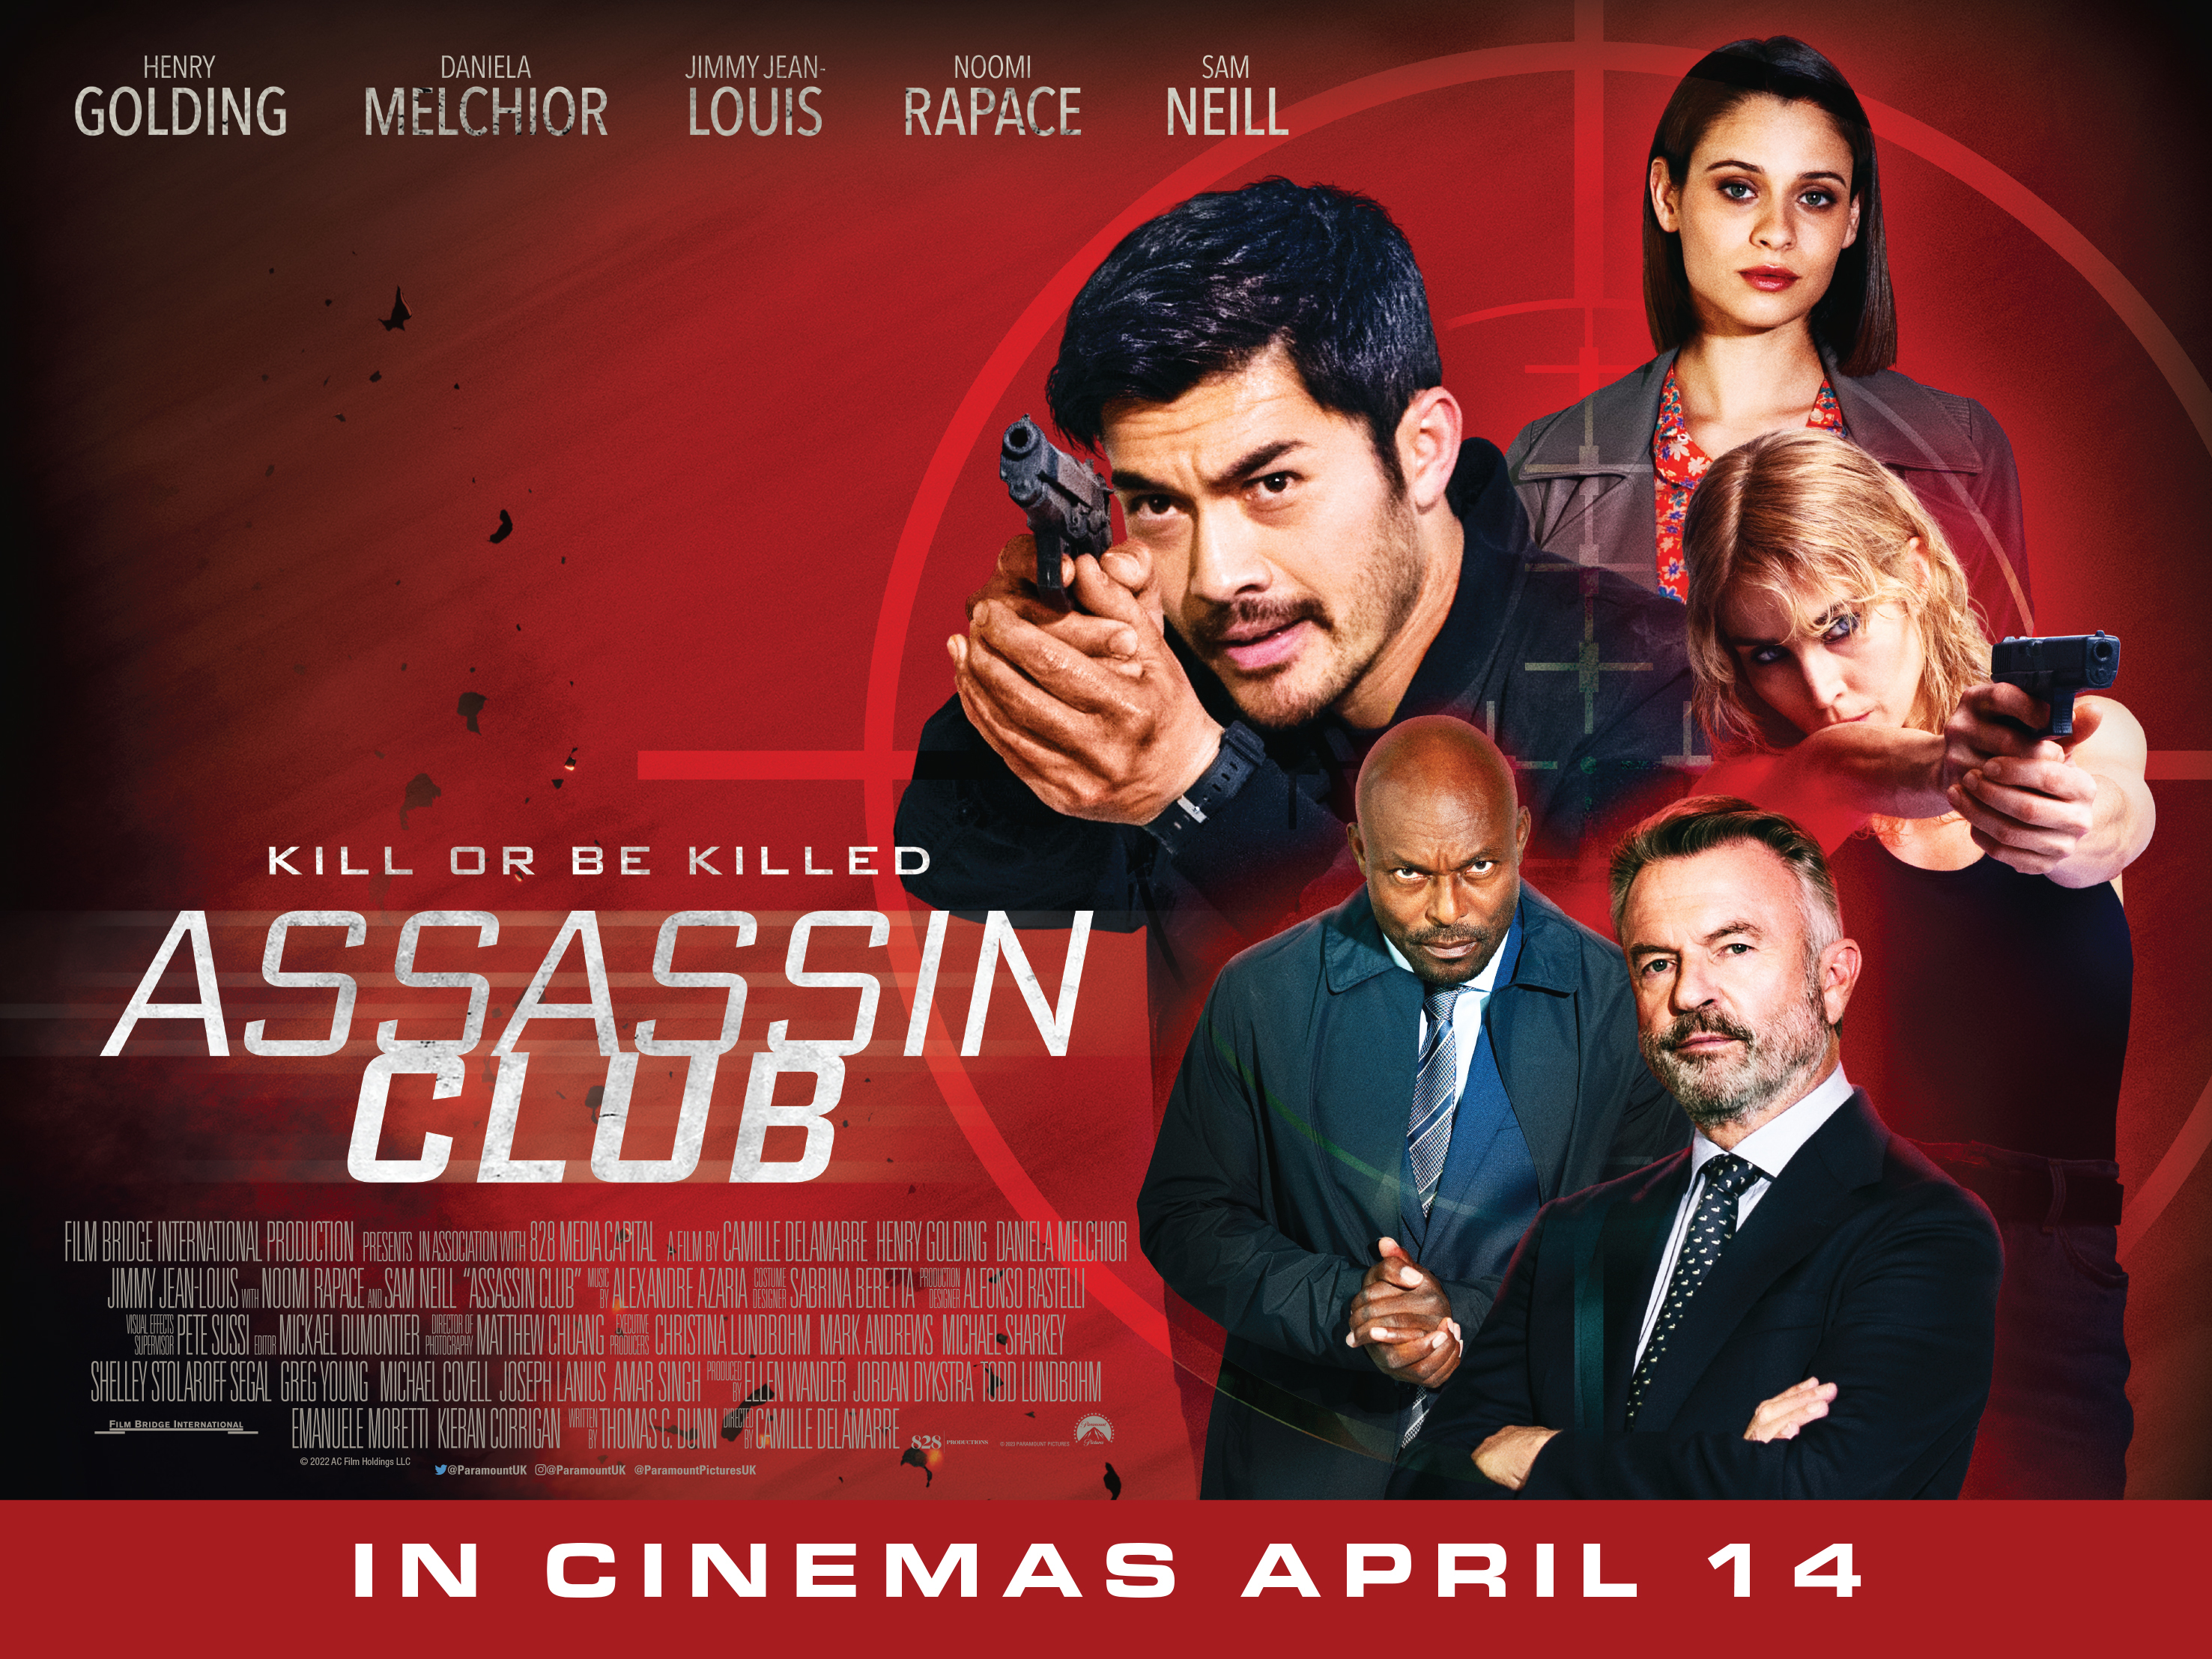 Big screen – Film and series premieres in April 2023